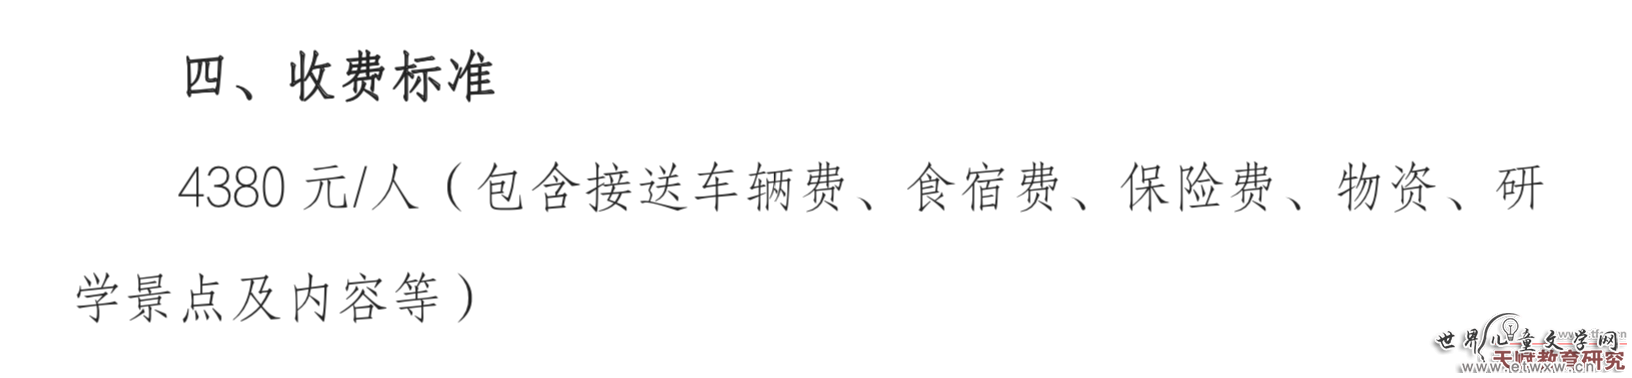 《“萤火之夏”北京自然研学营》活动通知截图。图/新京报调查组